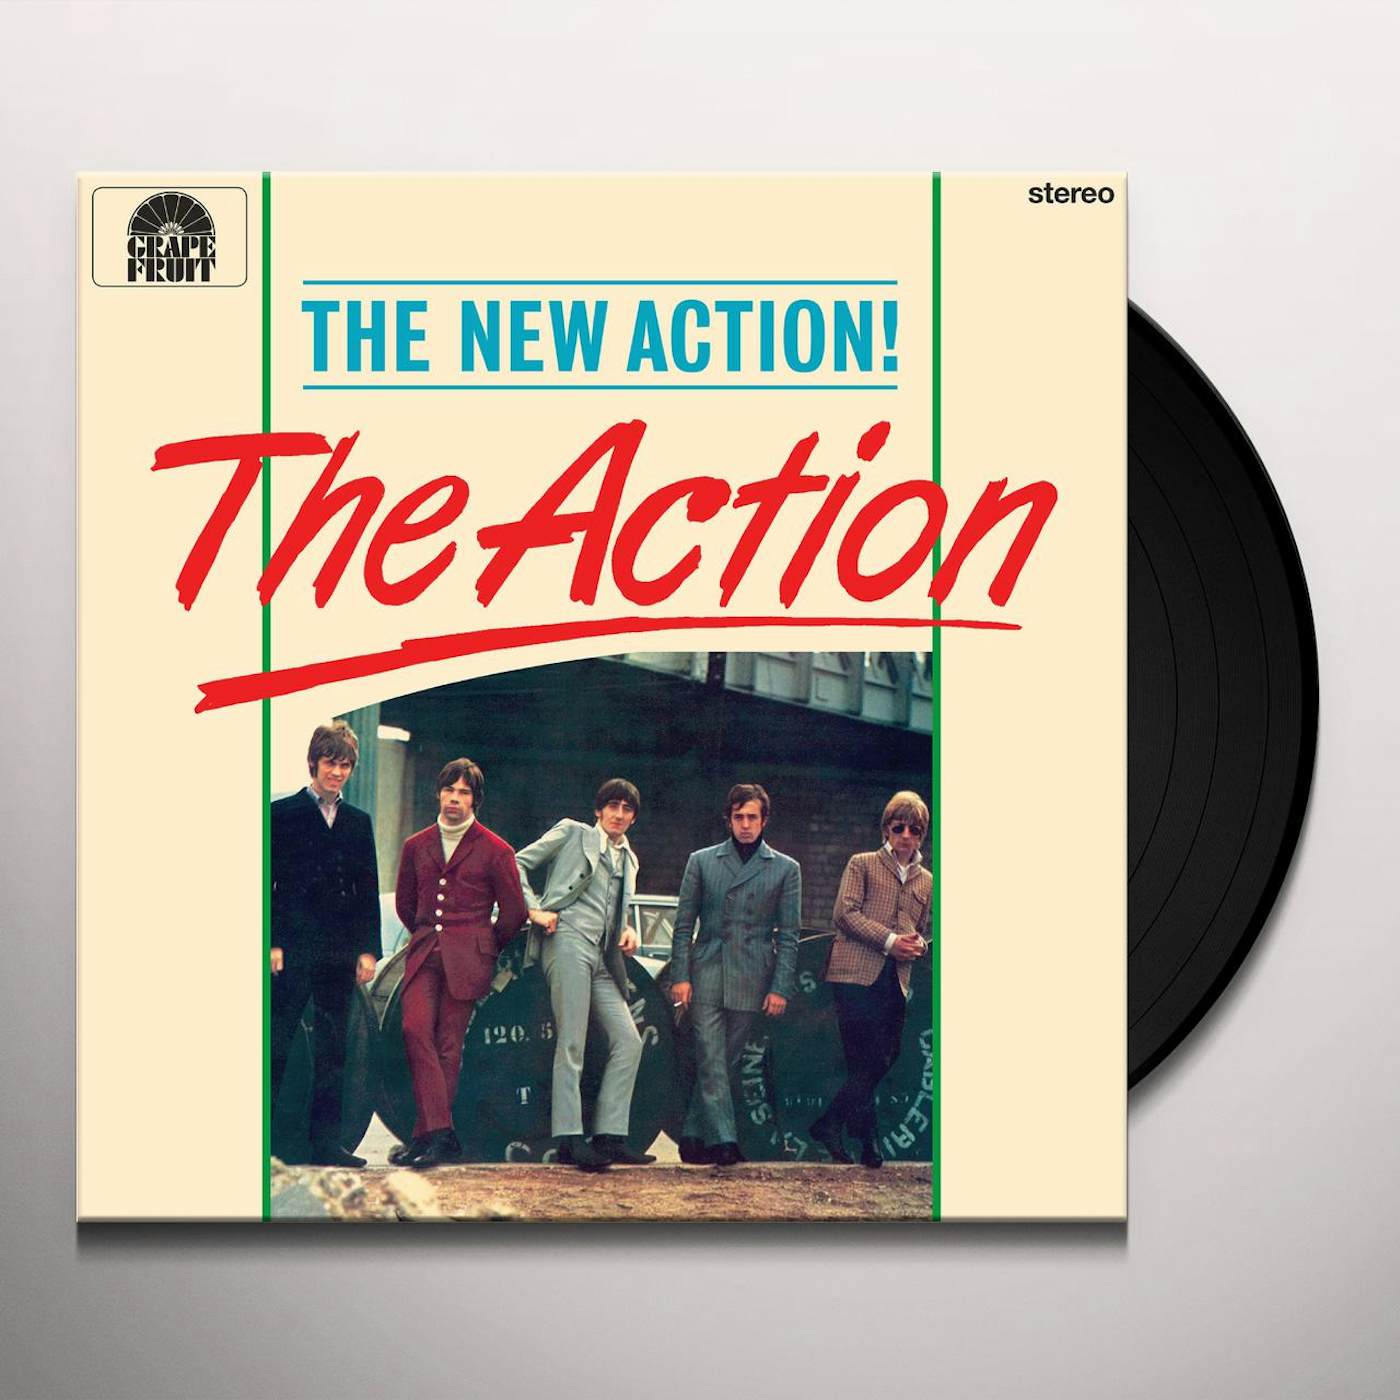 NEW ACTION Vinyl Record